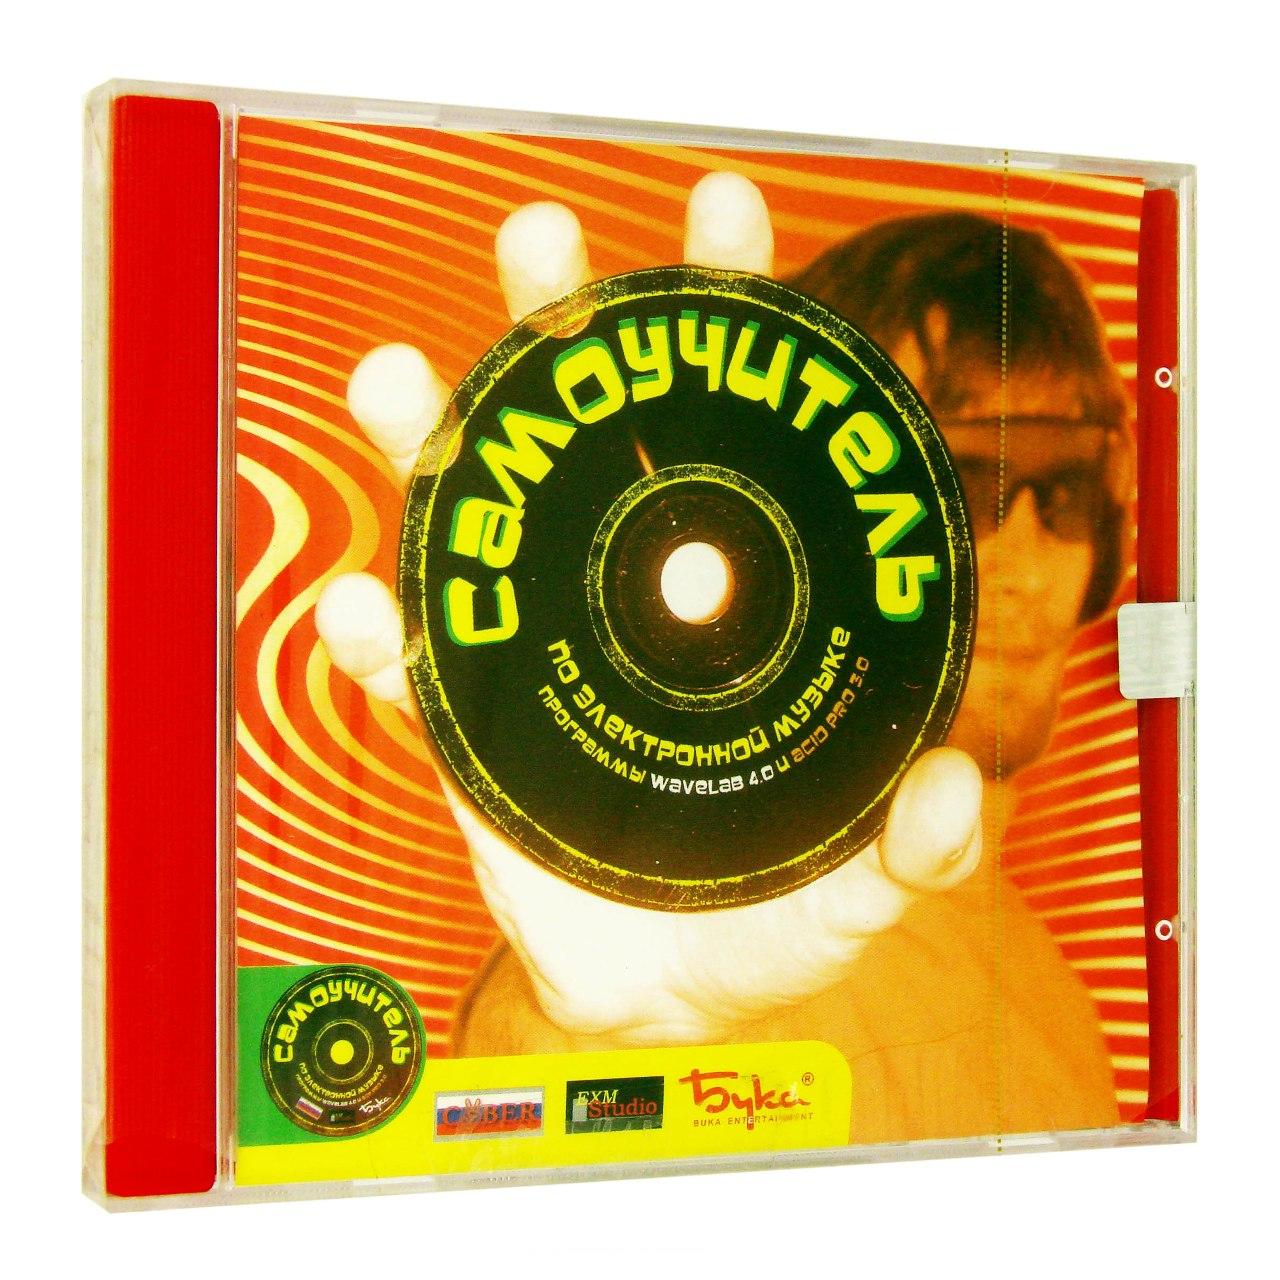 Компьютерный компакт-диск Самоучитель по электронной музыке. (ПК), фирма "Бука", 1CD